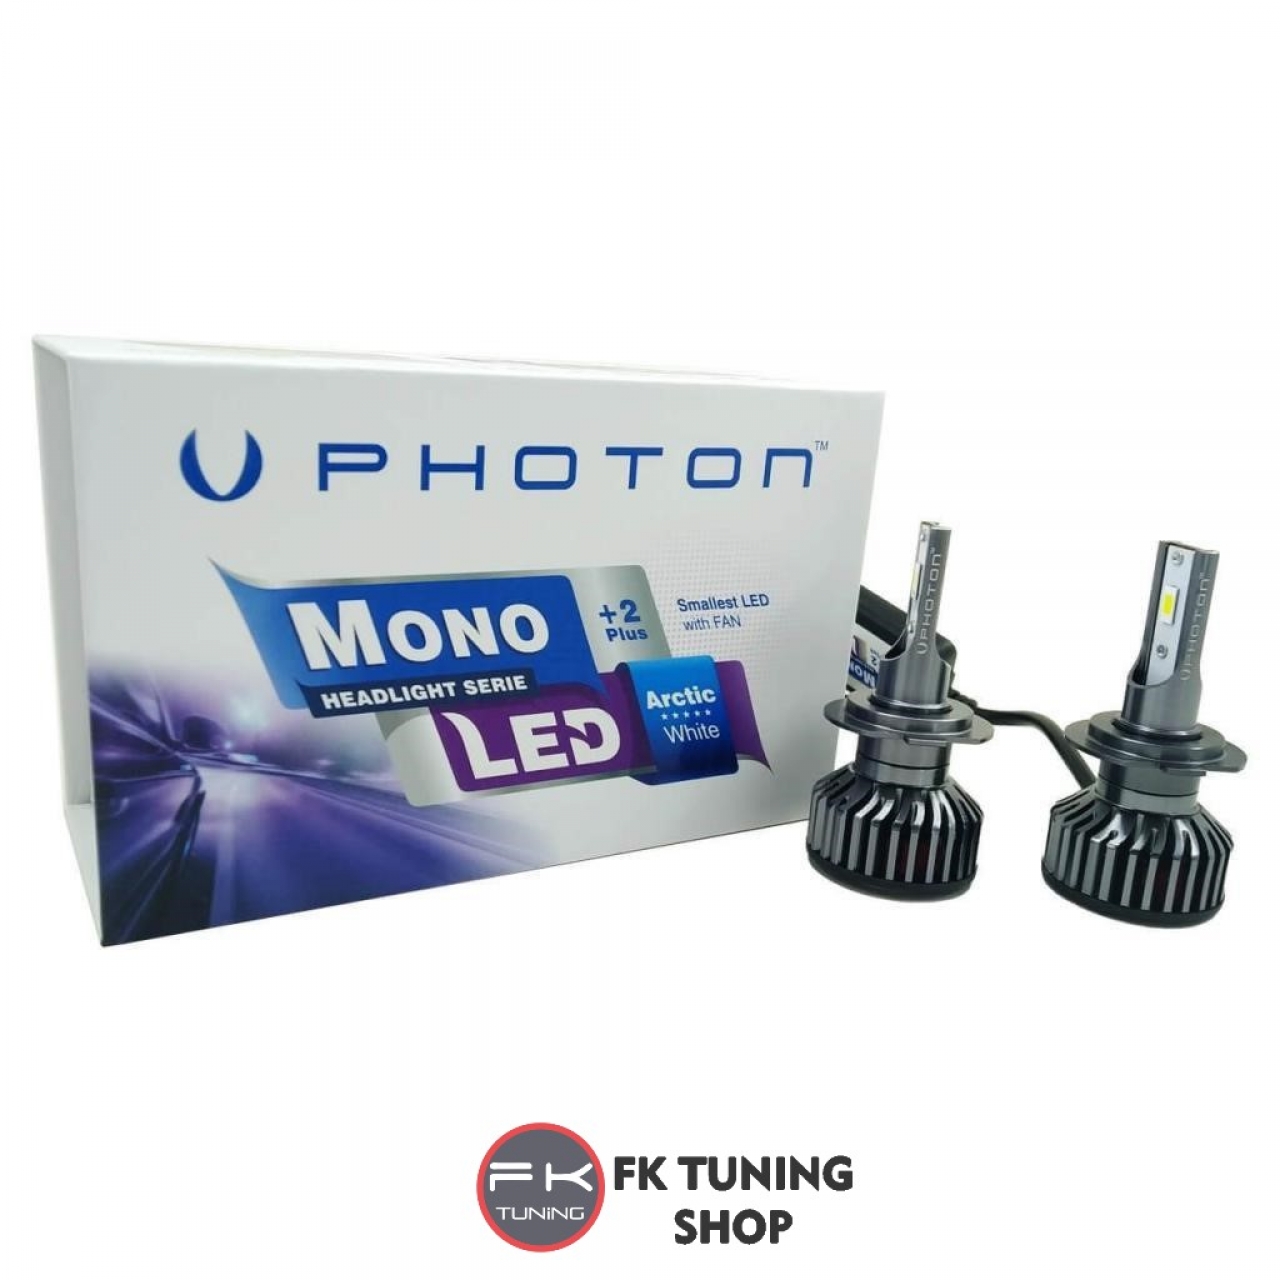 PHOTON H11 LED XENON MONO SERİSİ +2 Plus Serisi 